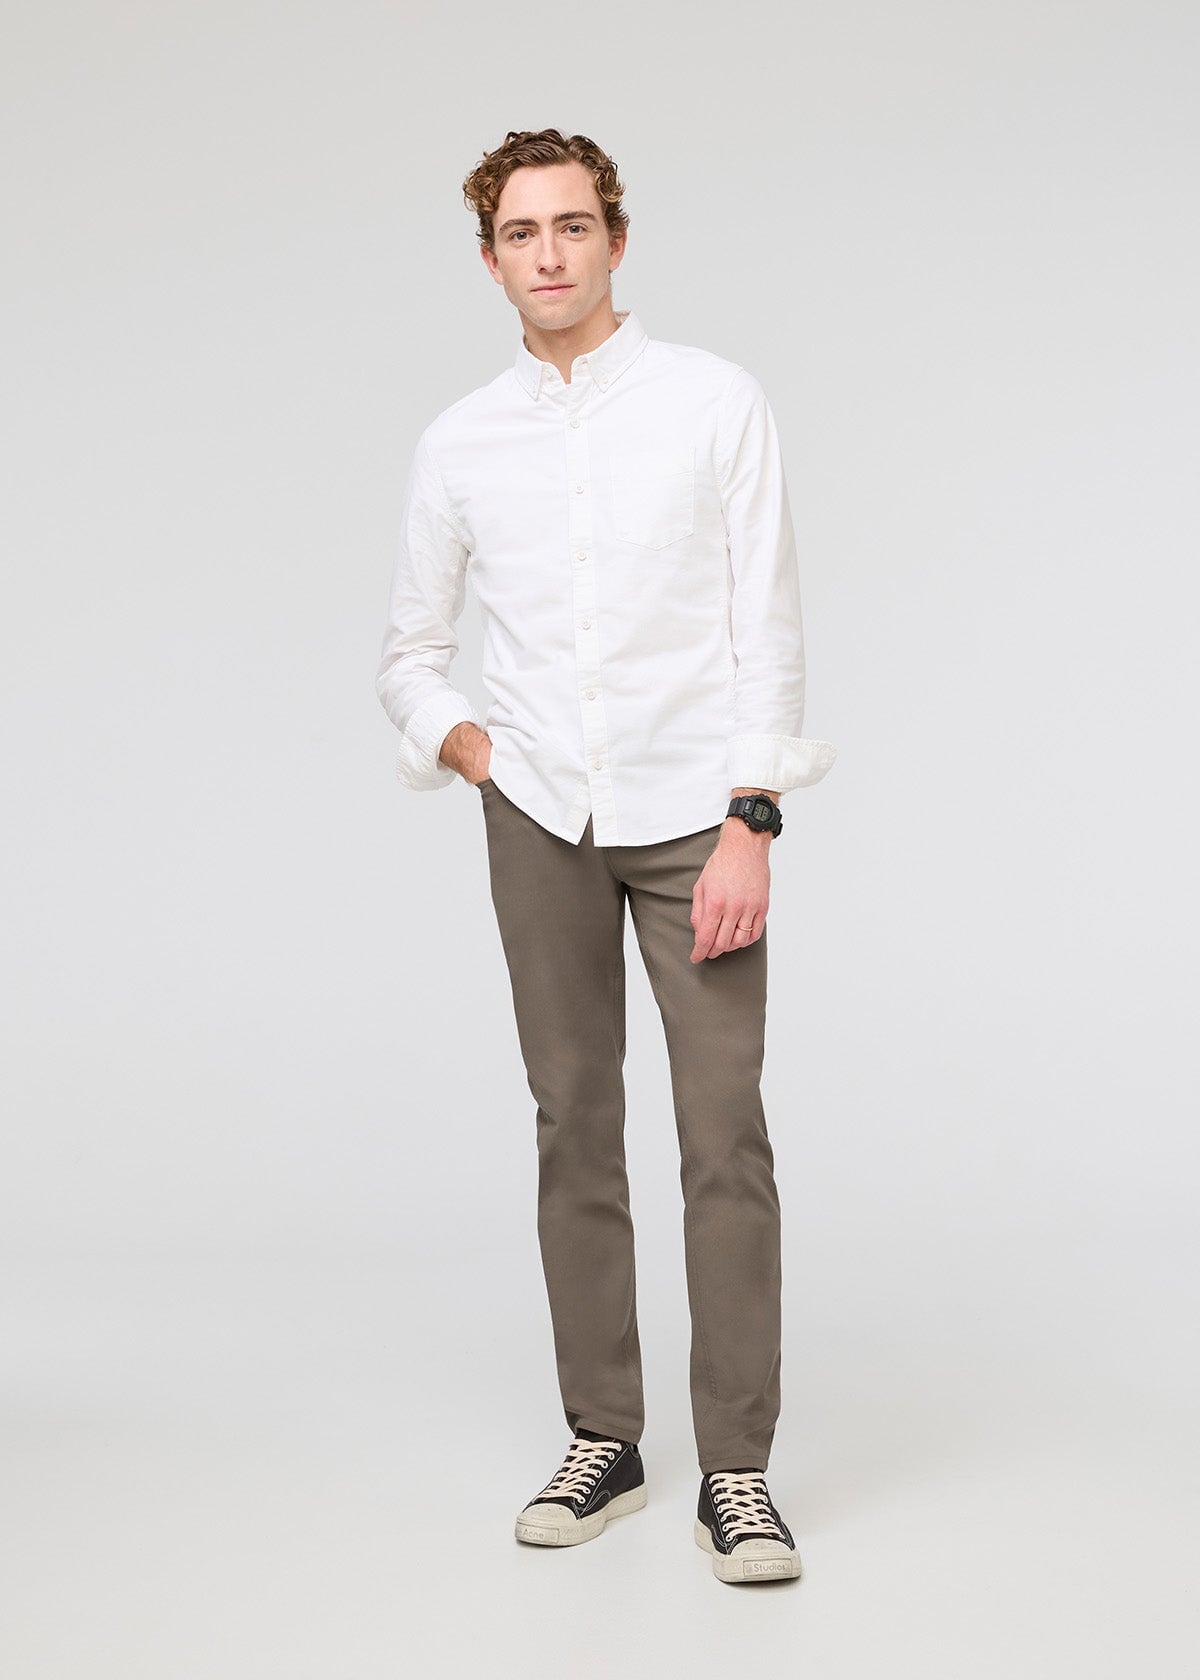 Casual White Shirt and Khaki Pants